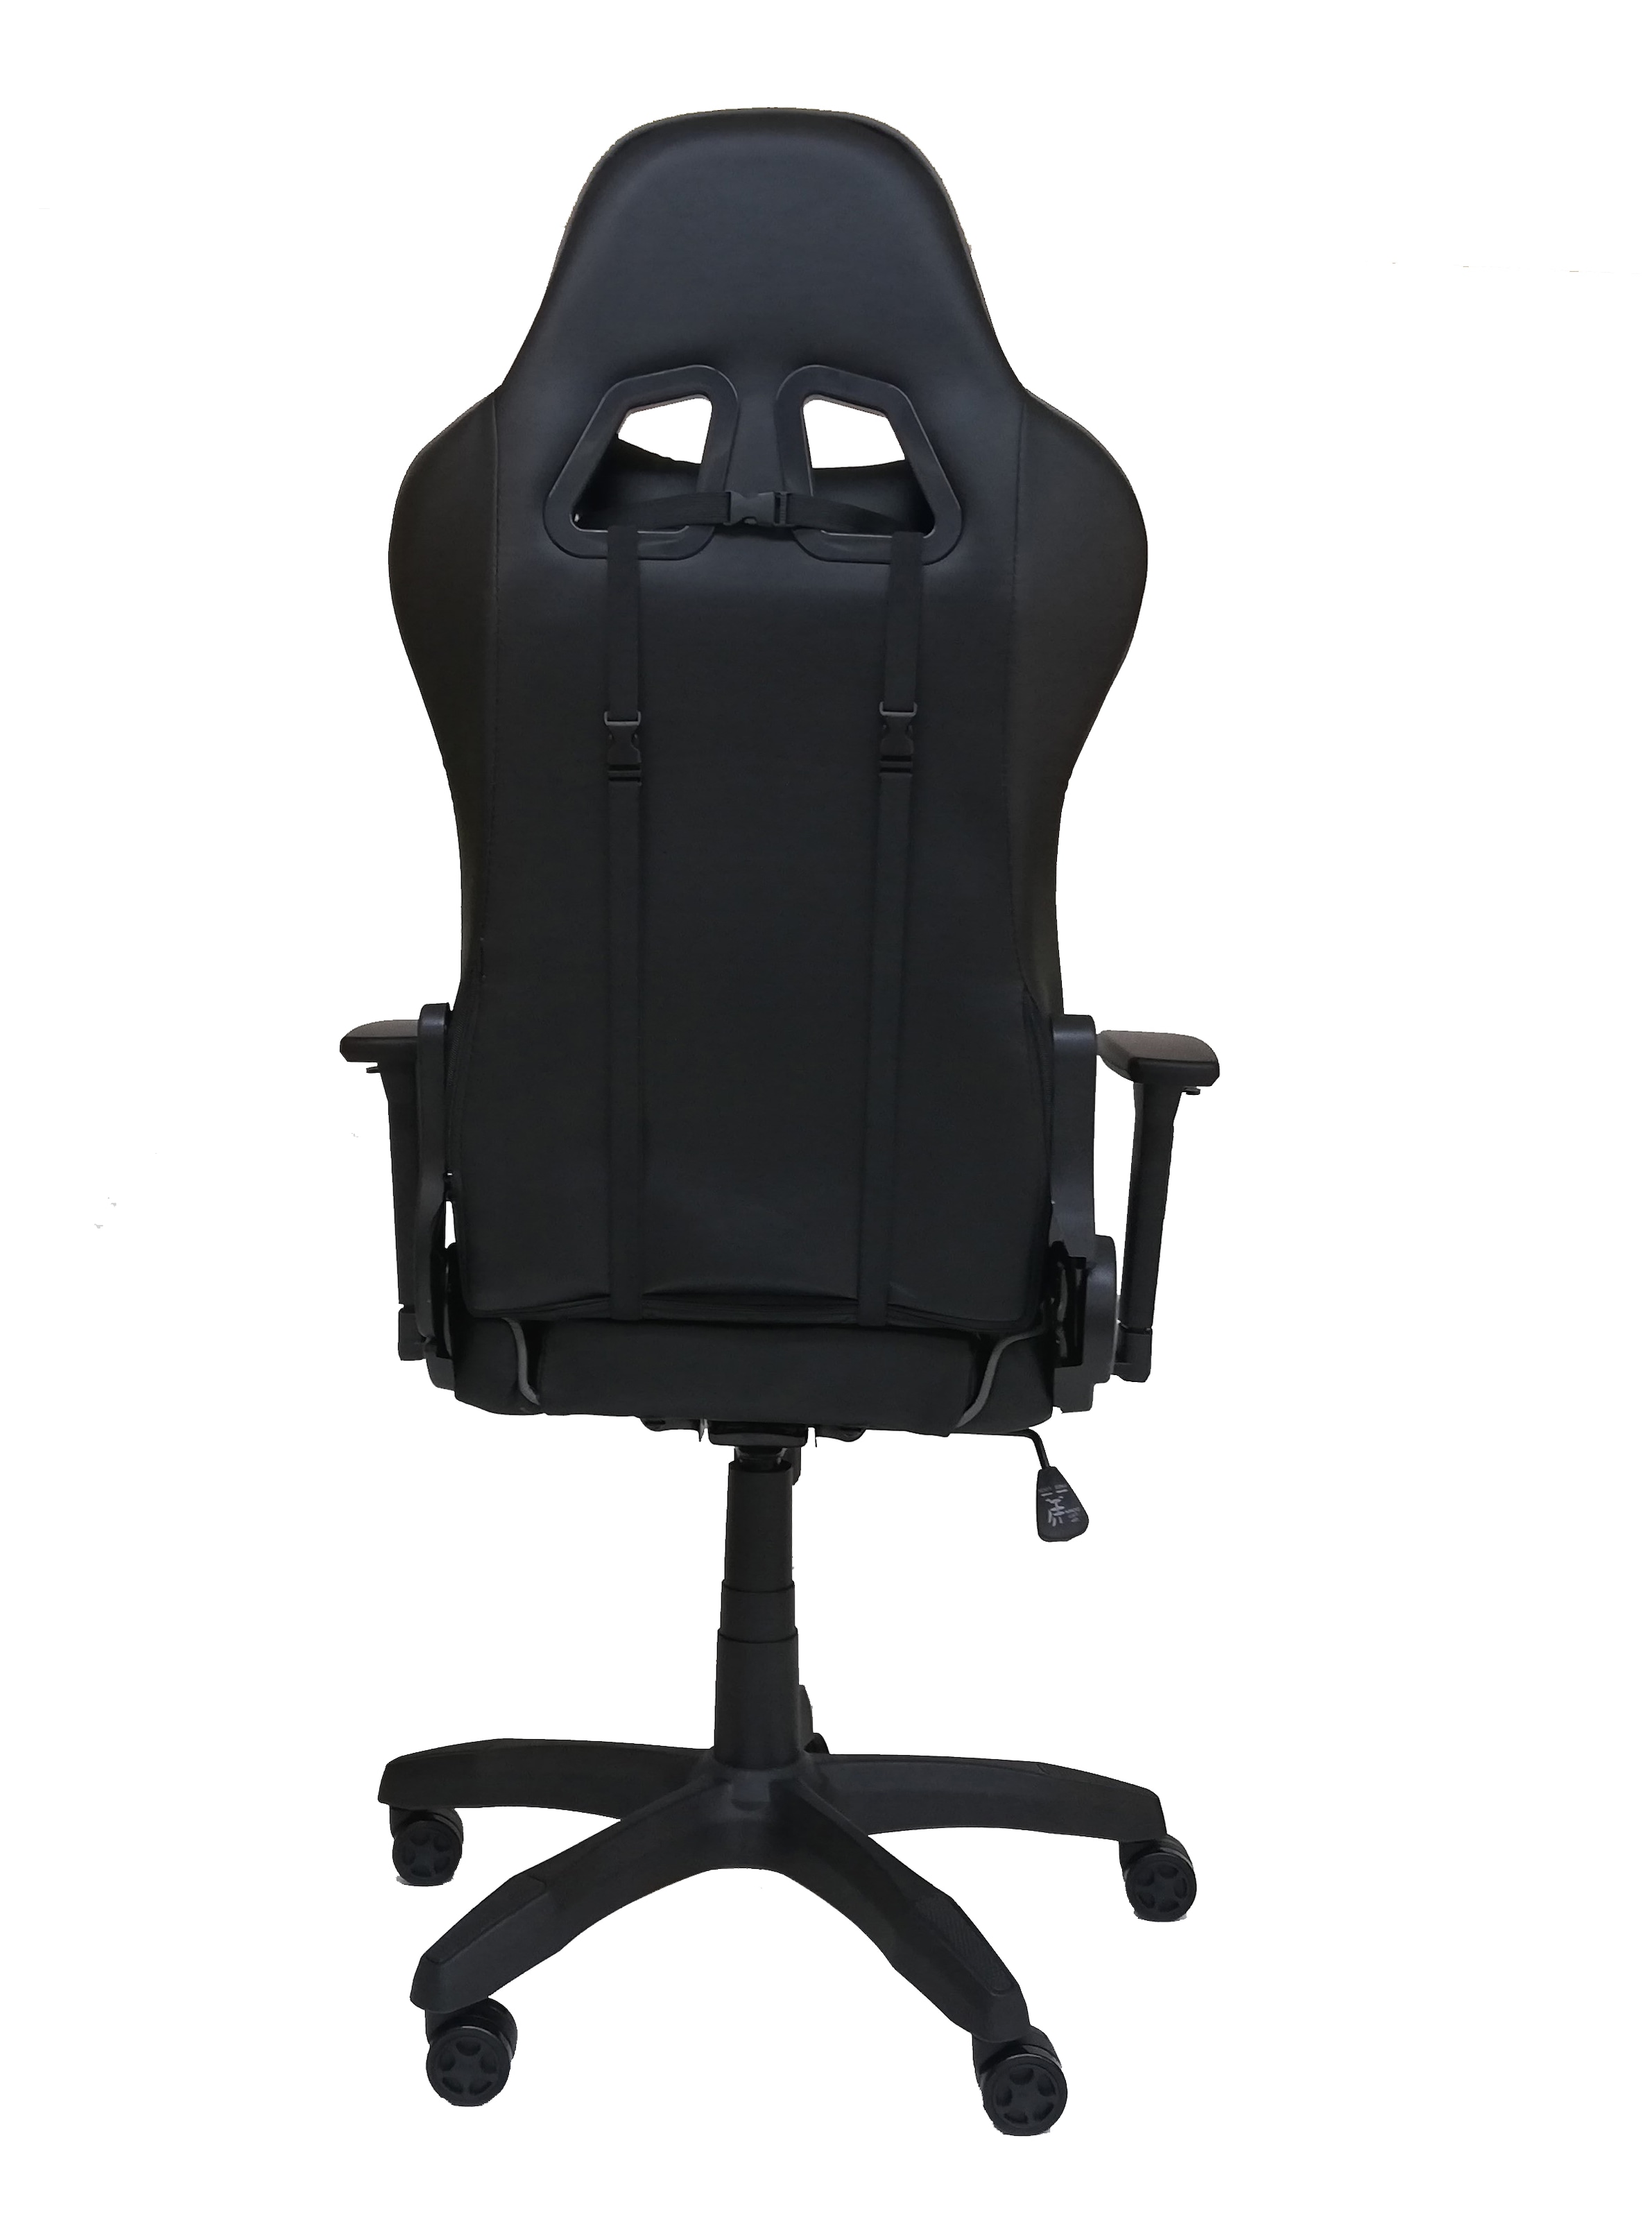 Hyrican Gaming-Stuhl »"Striker Comander" schwarz, ergonomischer Gamingstuhl«, Kunstleder, Bürostuhl, Schreibtischstuhl, geeignet für Kinder und Jugendliche